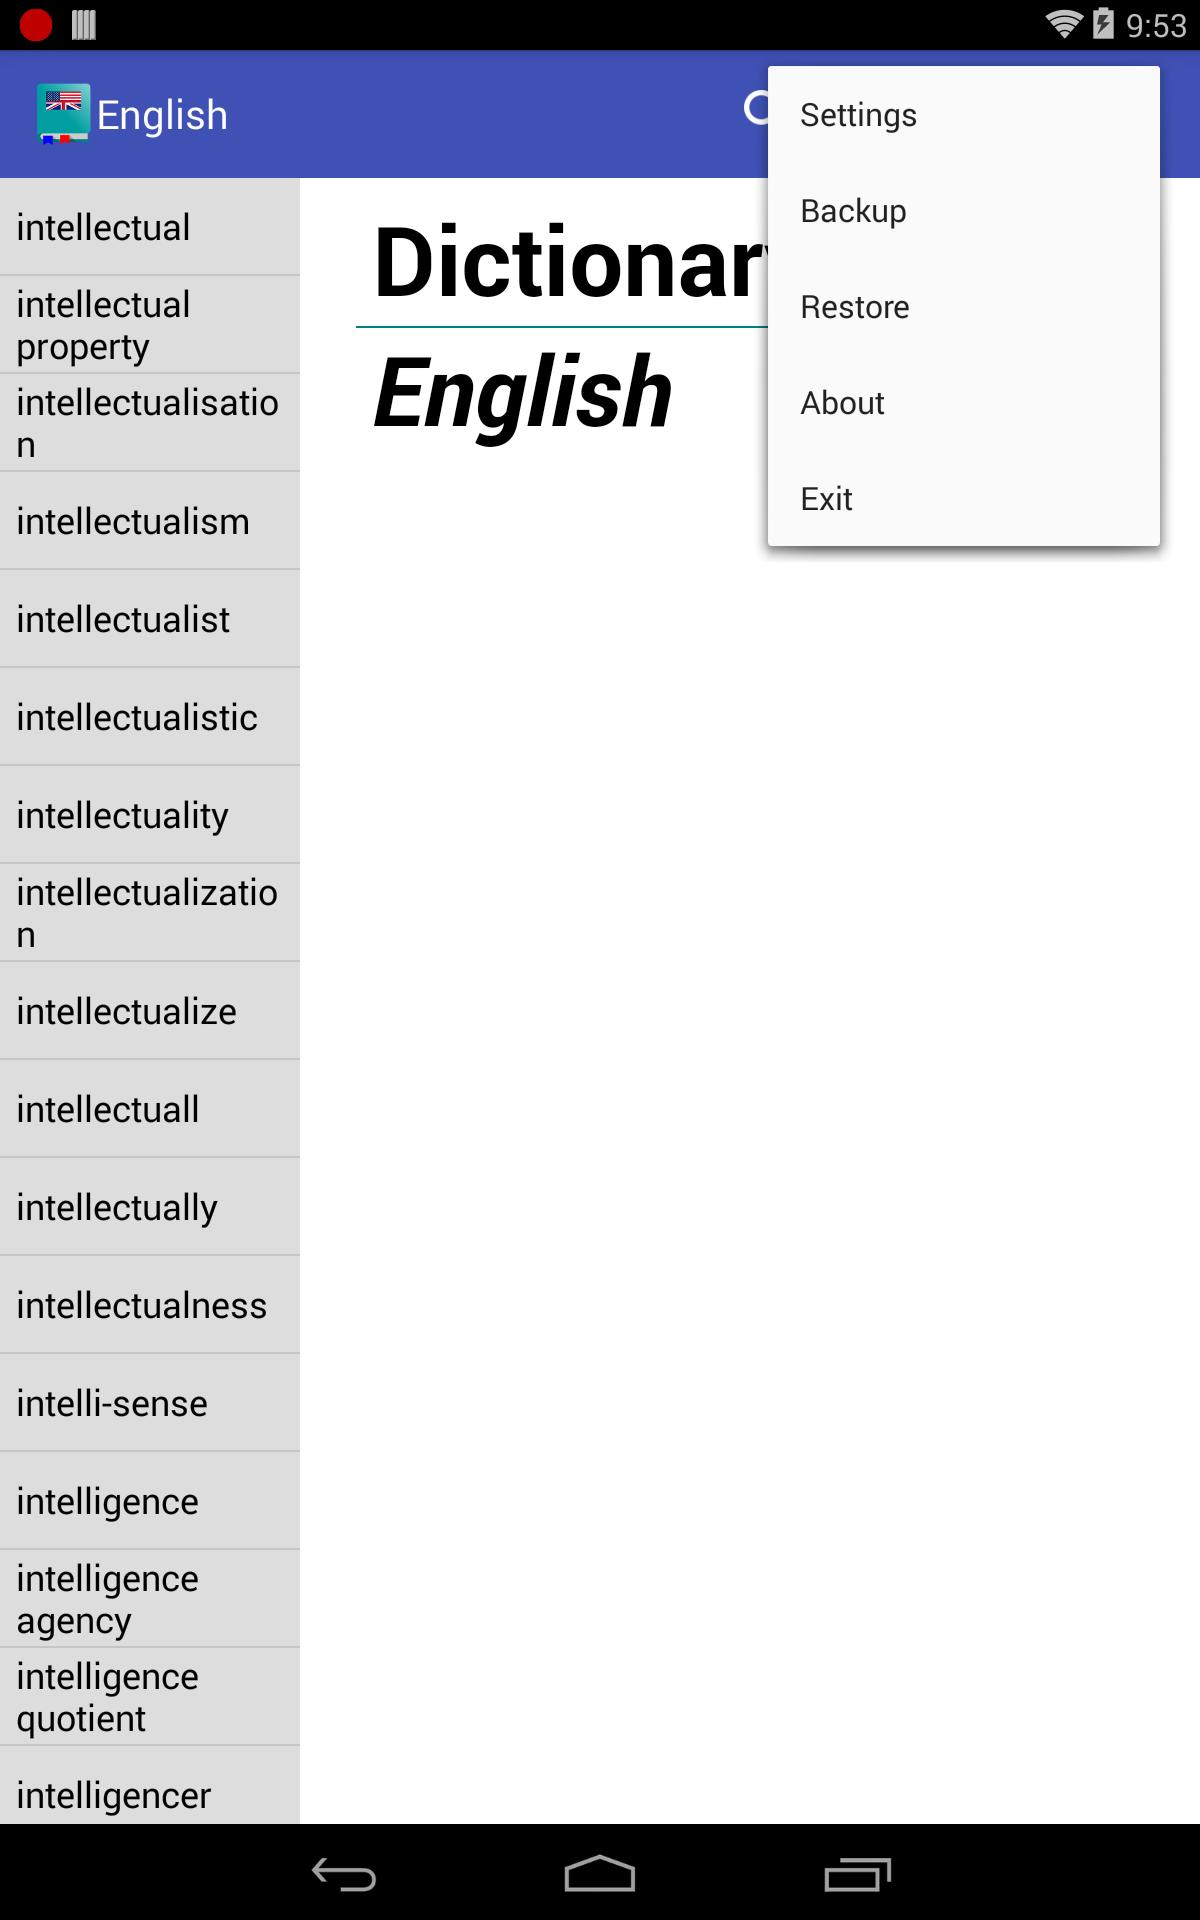 English Dictionary - Offline 5.1 Screenshot 18